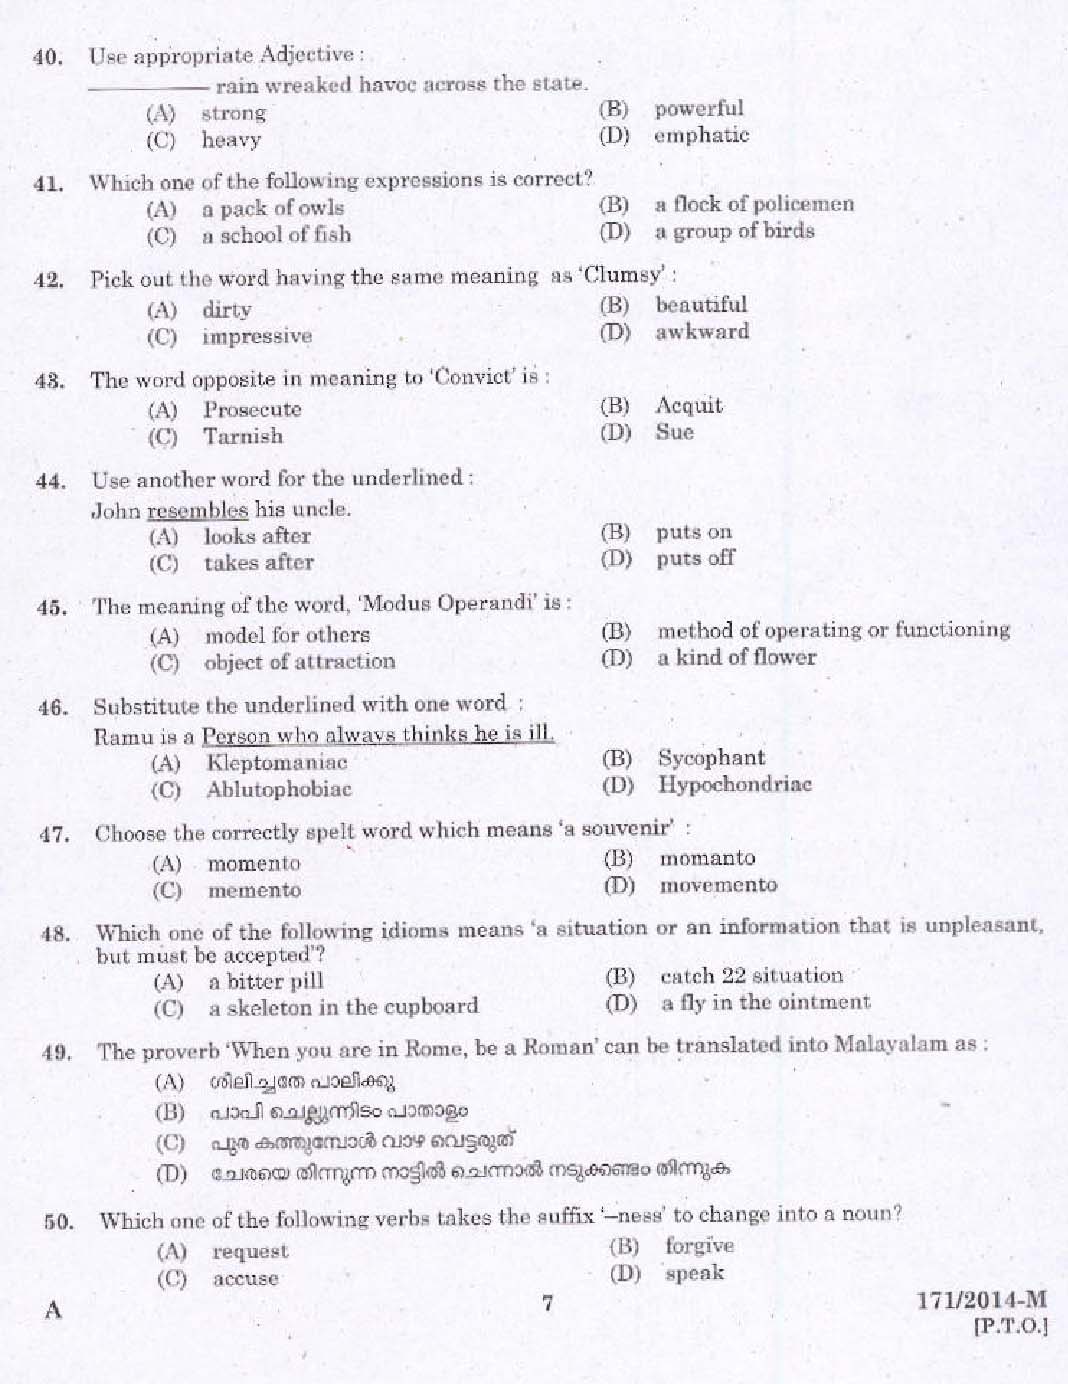 Kerala PSC Driver Grade II Exam 2014 Question Paper Code 1712014 M 5